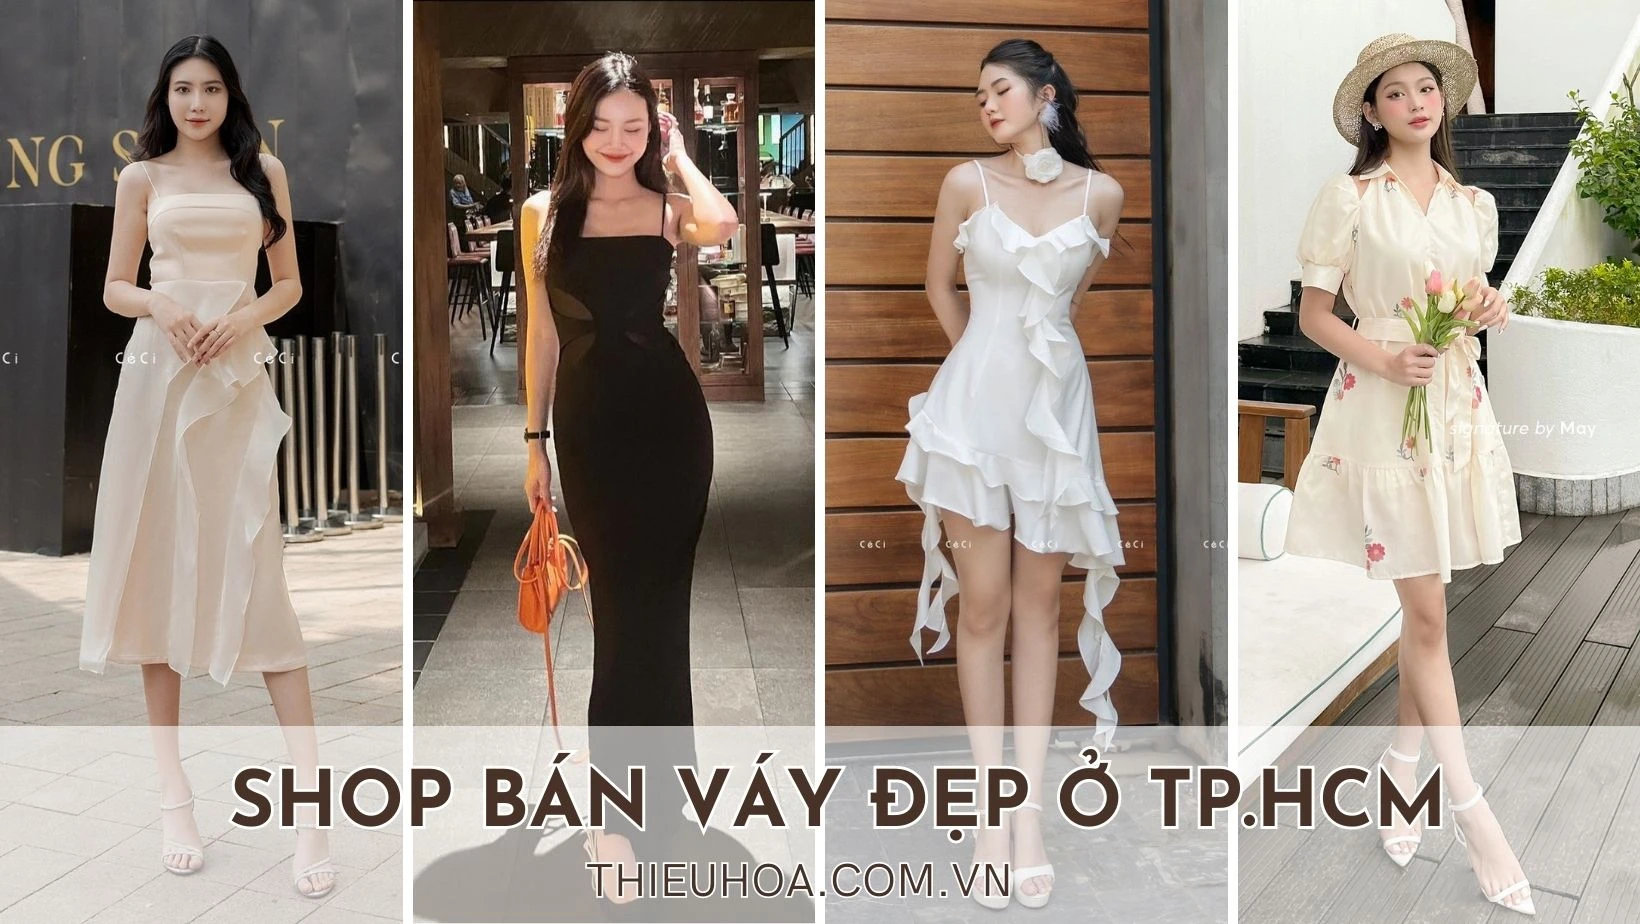 Top 8 Cửa hàng bán váy đầm dự tiệc đẹp nhất Quận 4, TP. HCM - Mytour.vn